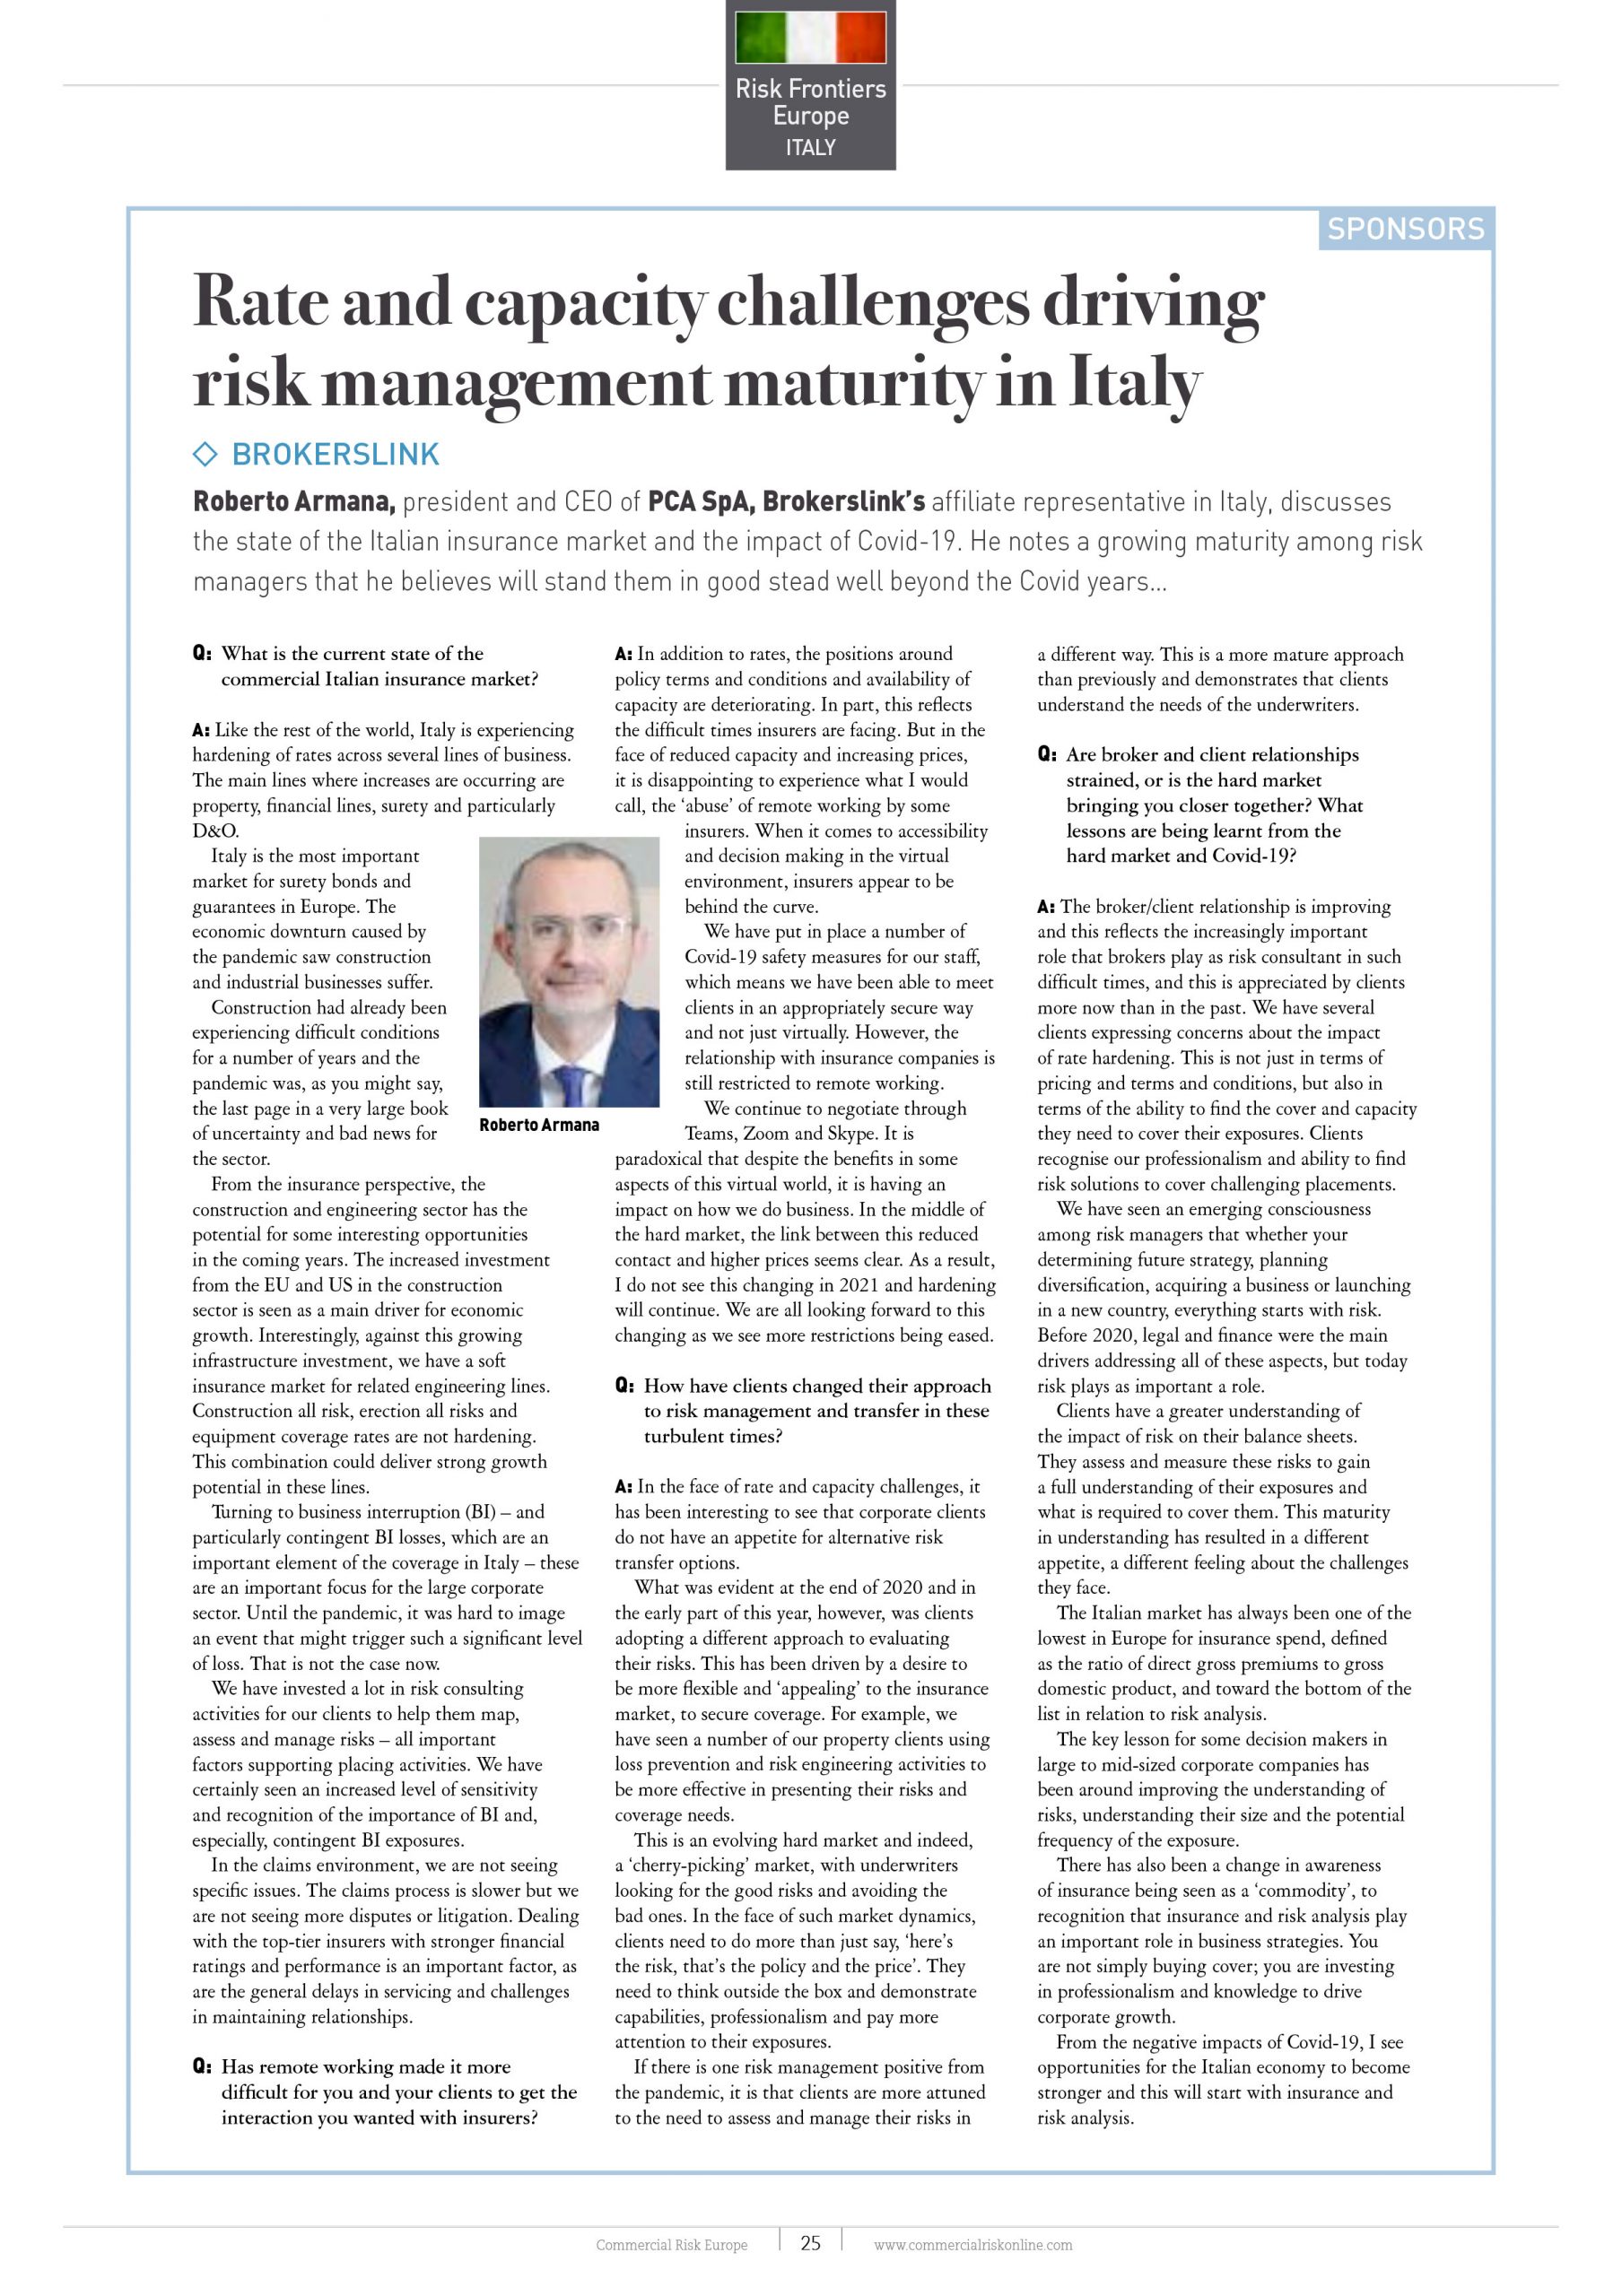 Le sfide di tasso e capacità che guidano la maturità della gestione del rischio in Italia - PCA Consultative Broker